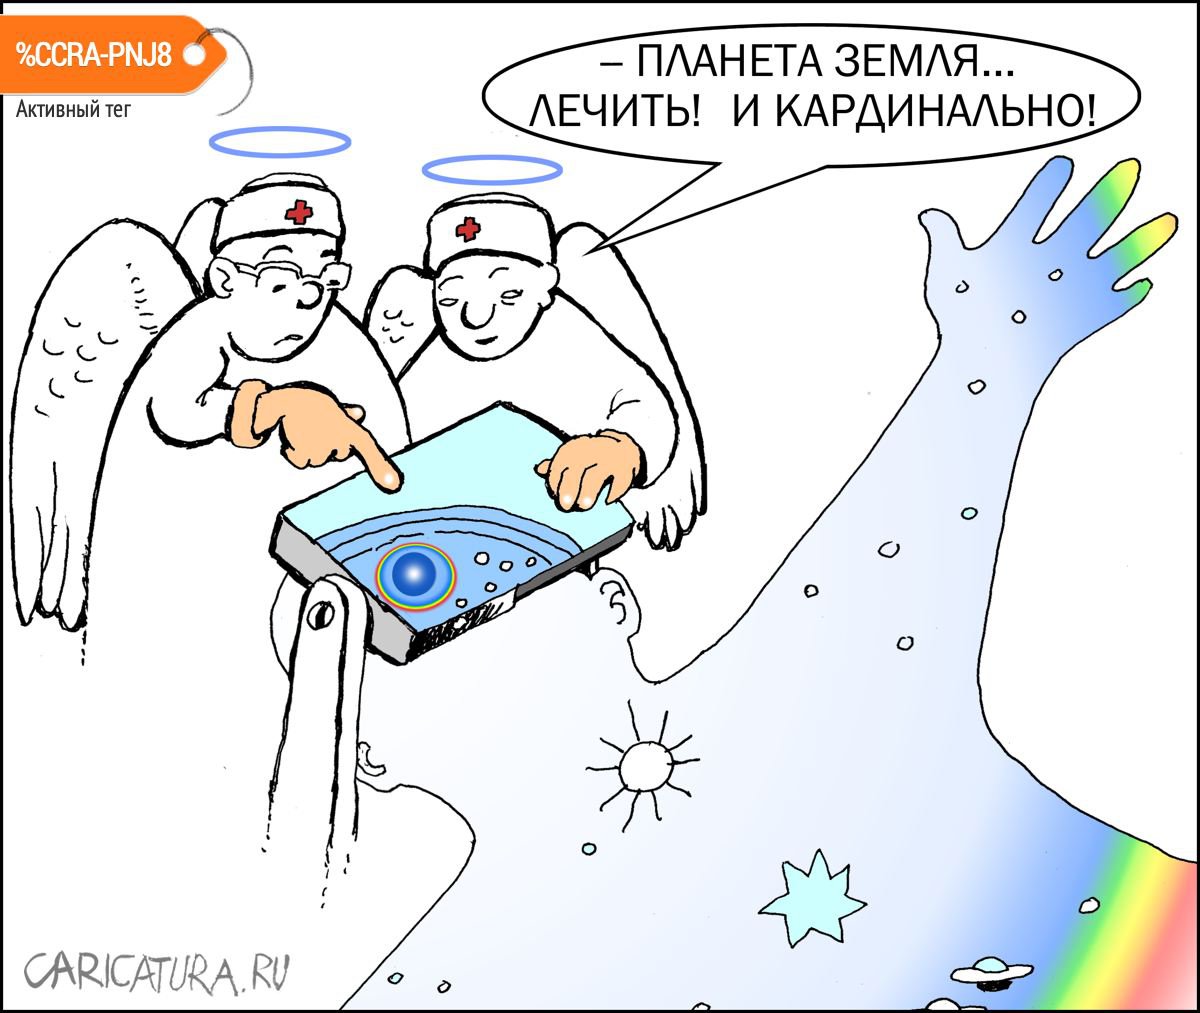 Карикатура "По образу и подобию", Александр Уваров